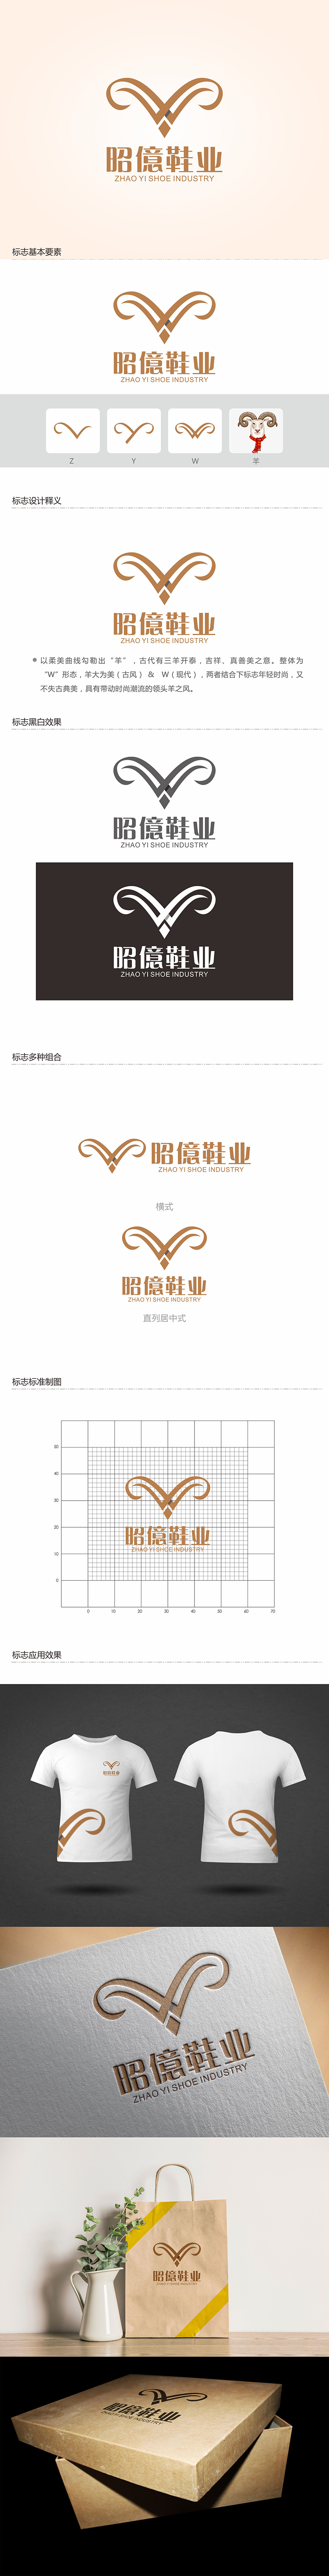 郑锦尚的昭億鞋业logo设计